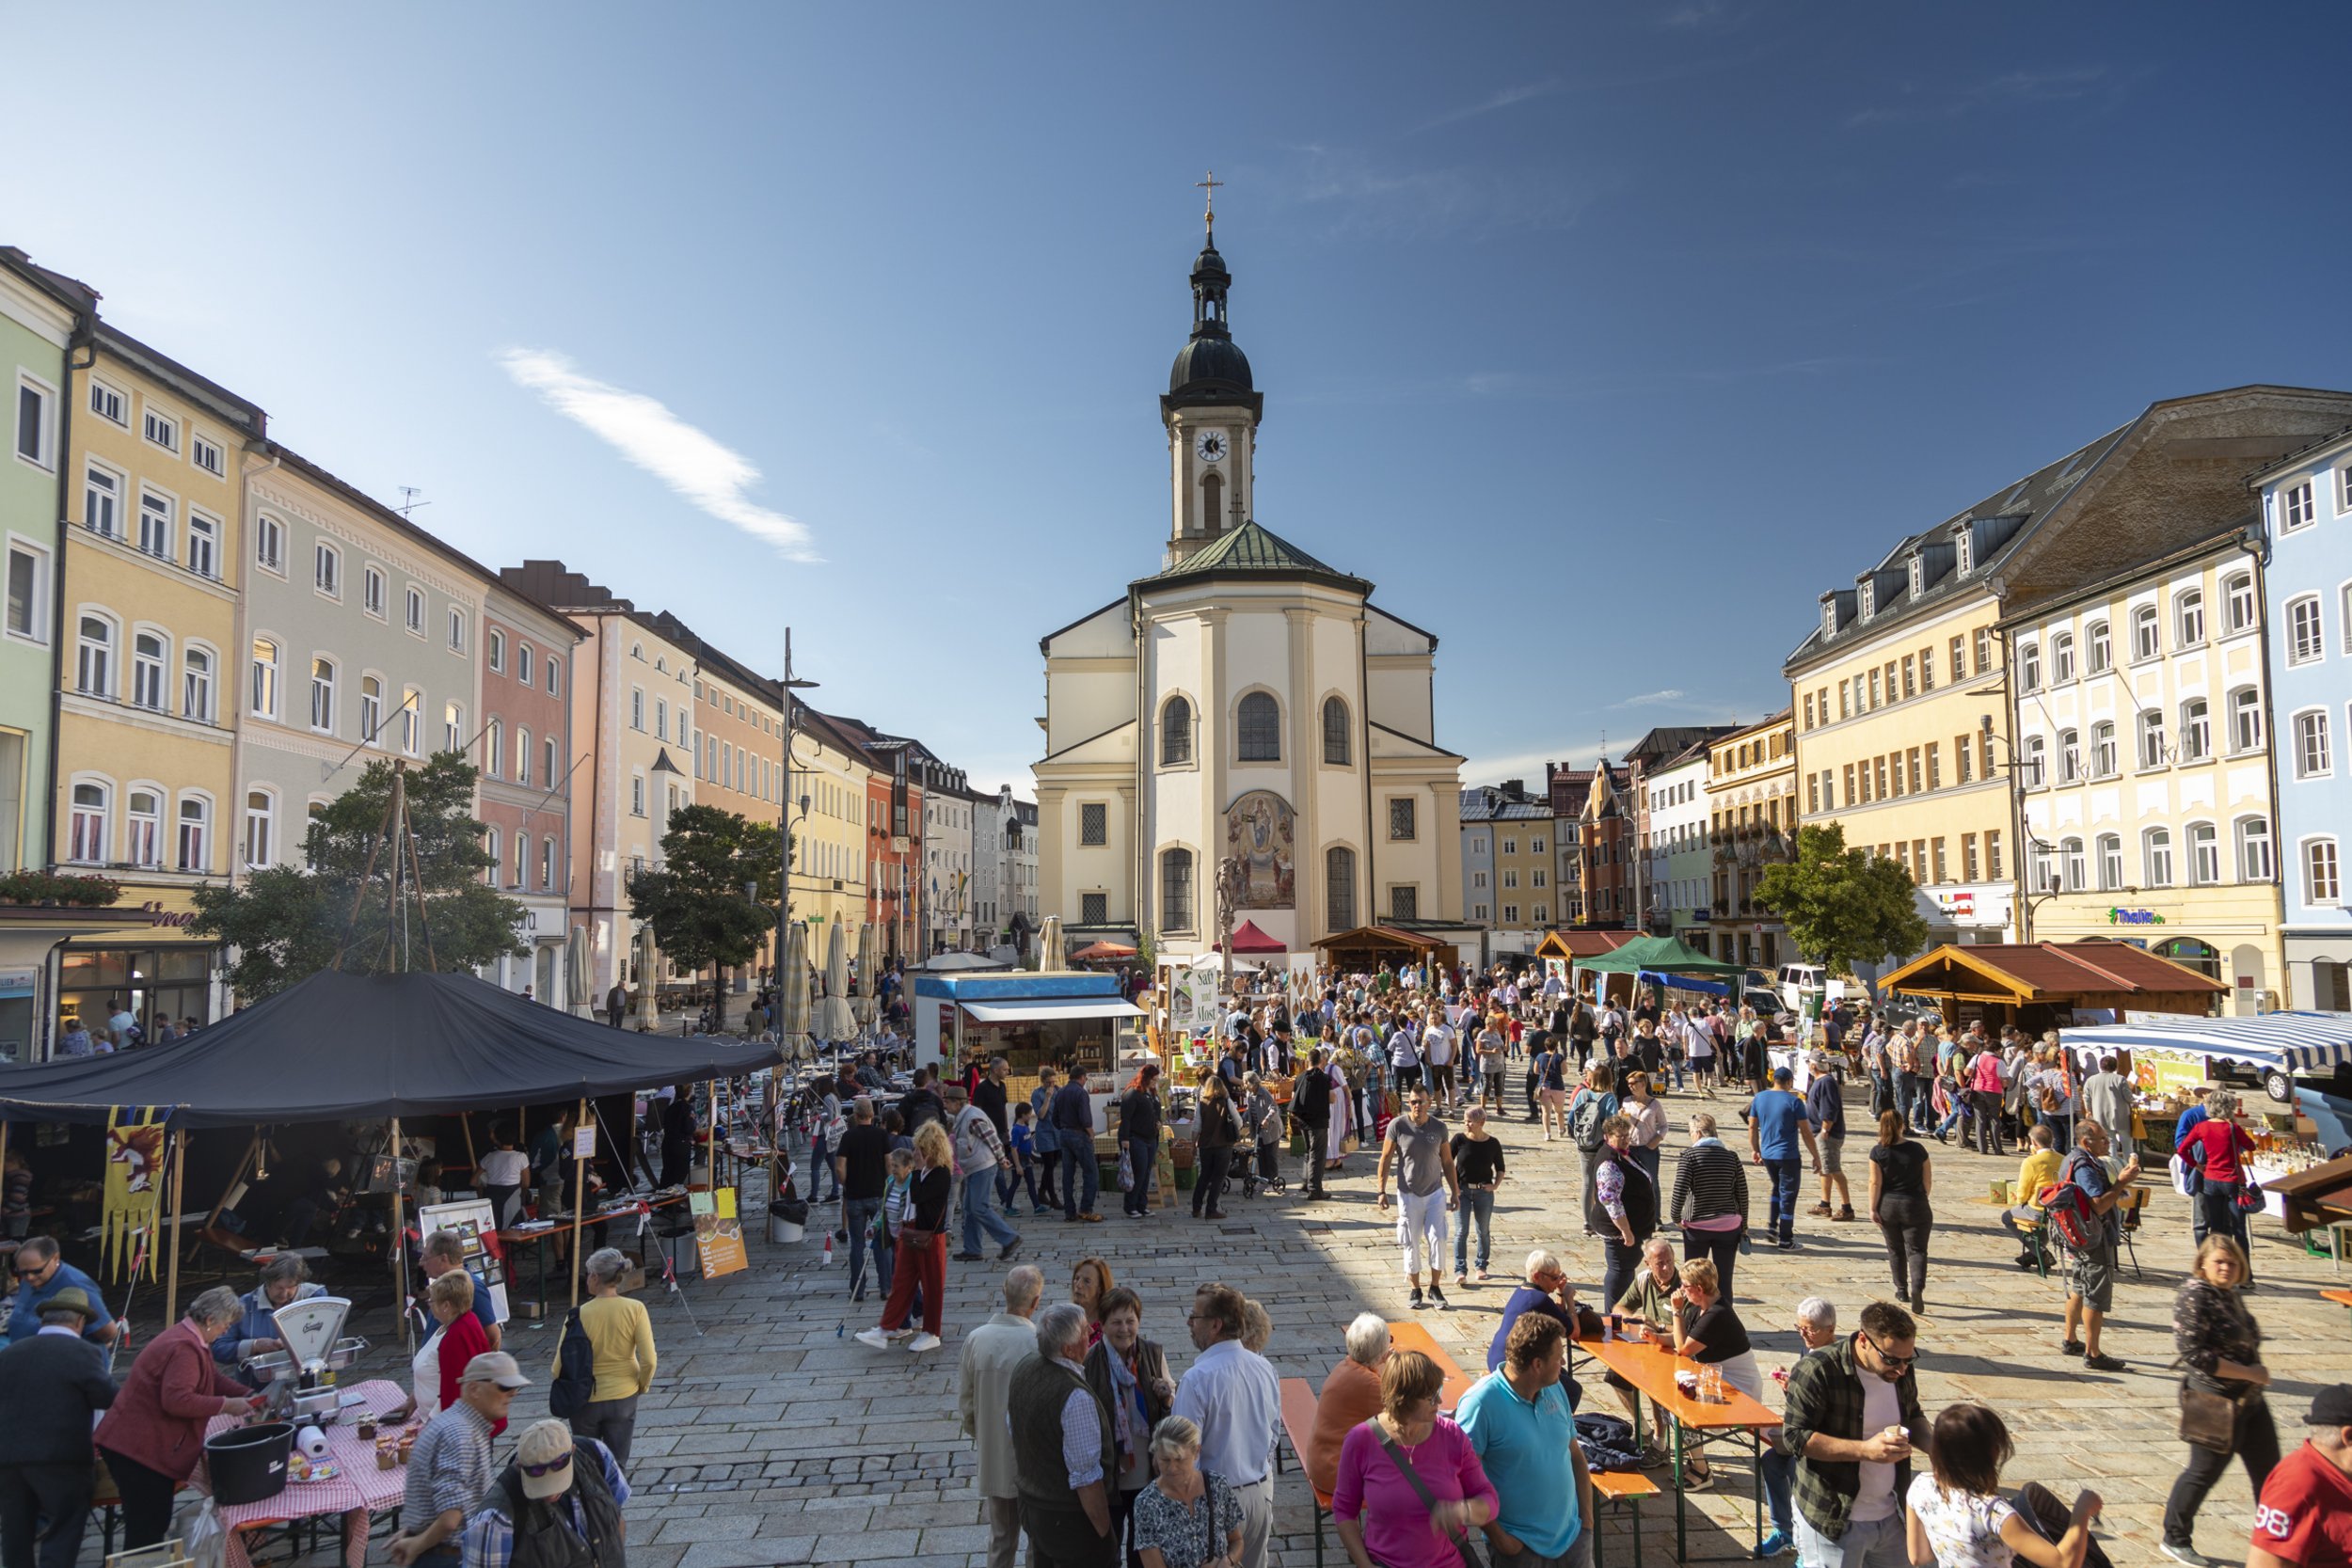 Apfelmarkt am Stadtplatz von Traunstein mit Blick auf die Stadtpfarrkirche Sankt Oswald